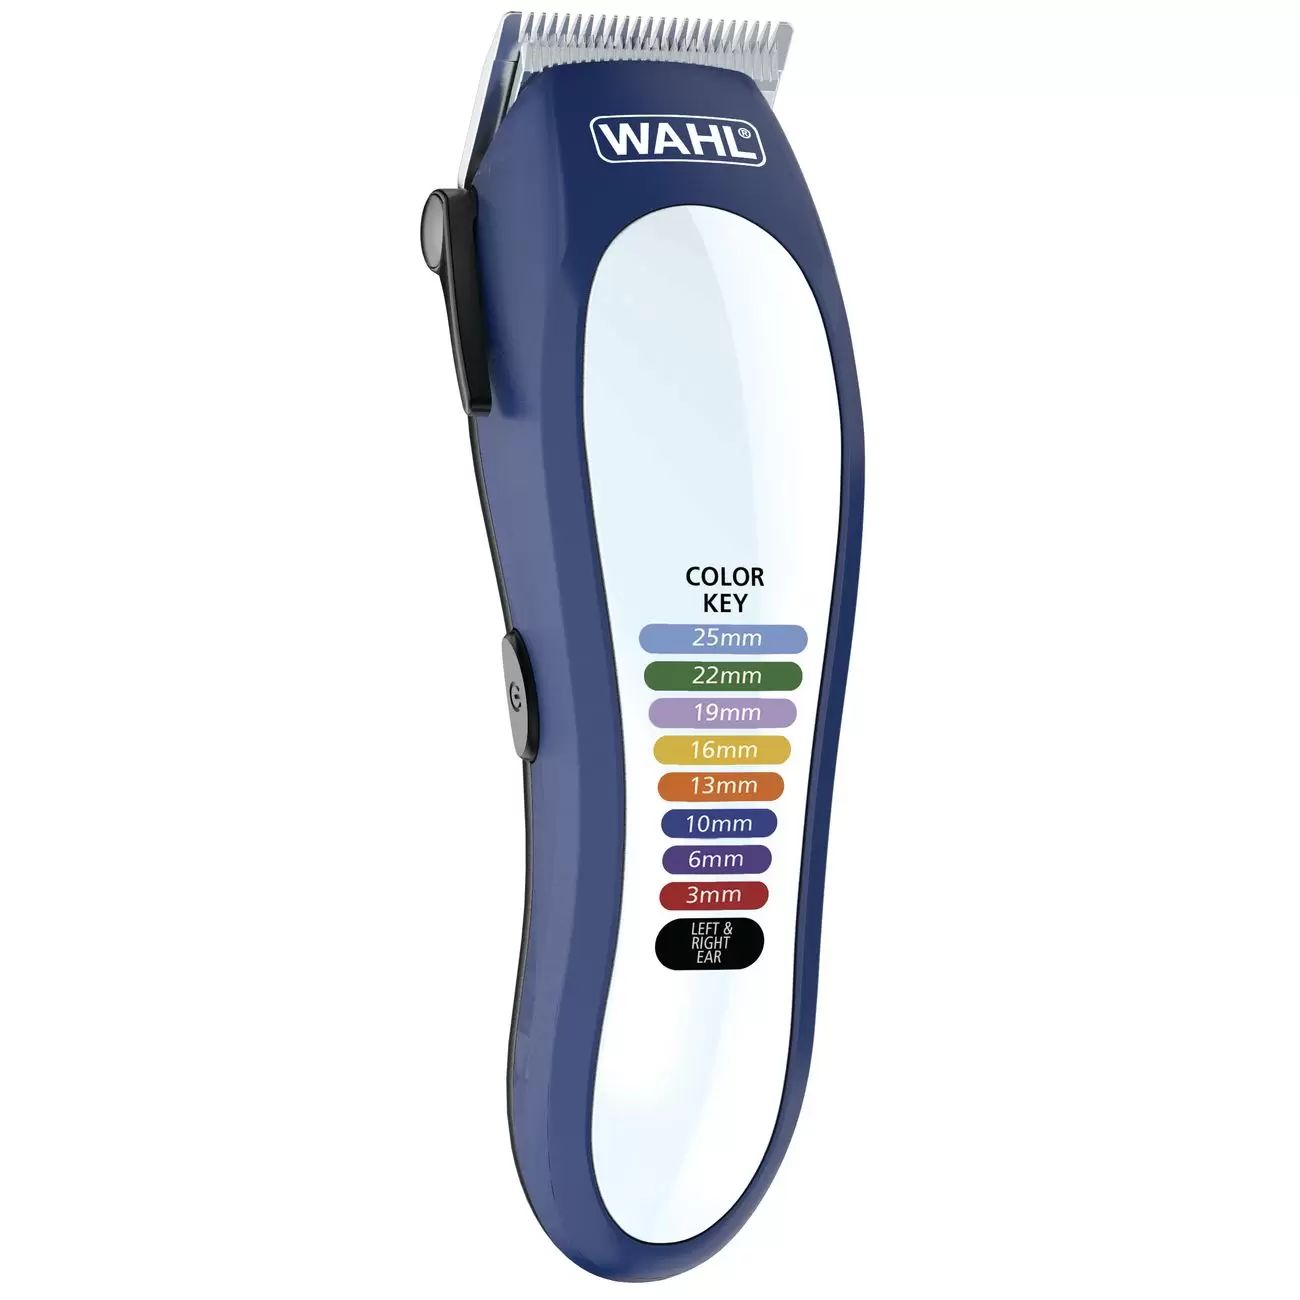 Машинка для стрижки волос Wahl Color Pro Lithium (79600-3716) белый, синий машинка для стрижки волос wahl color pro lithium 79600 3716 белый синий